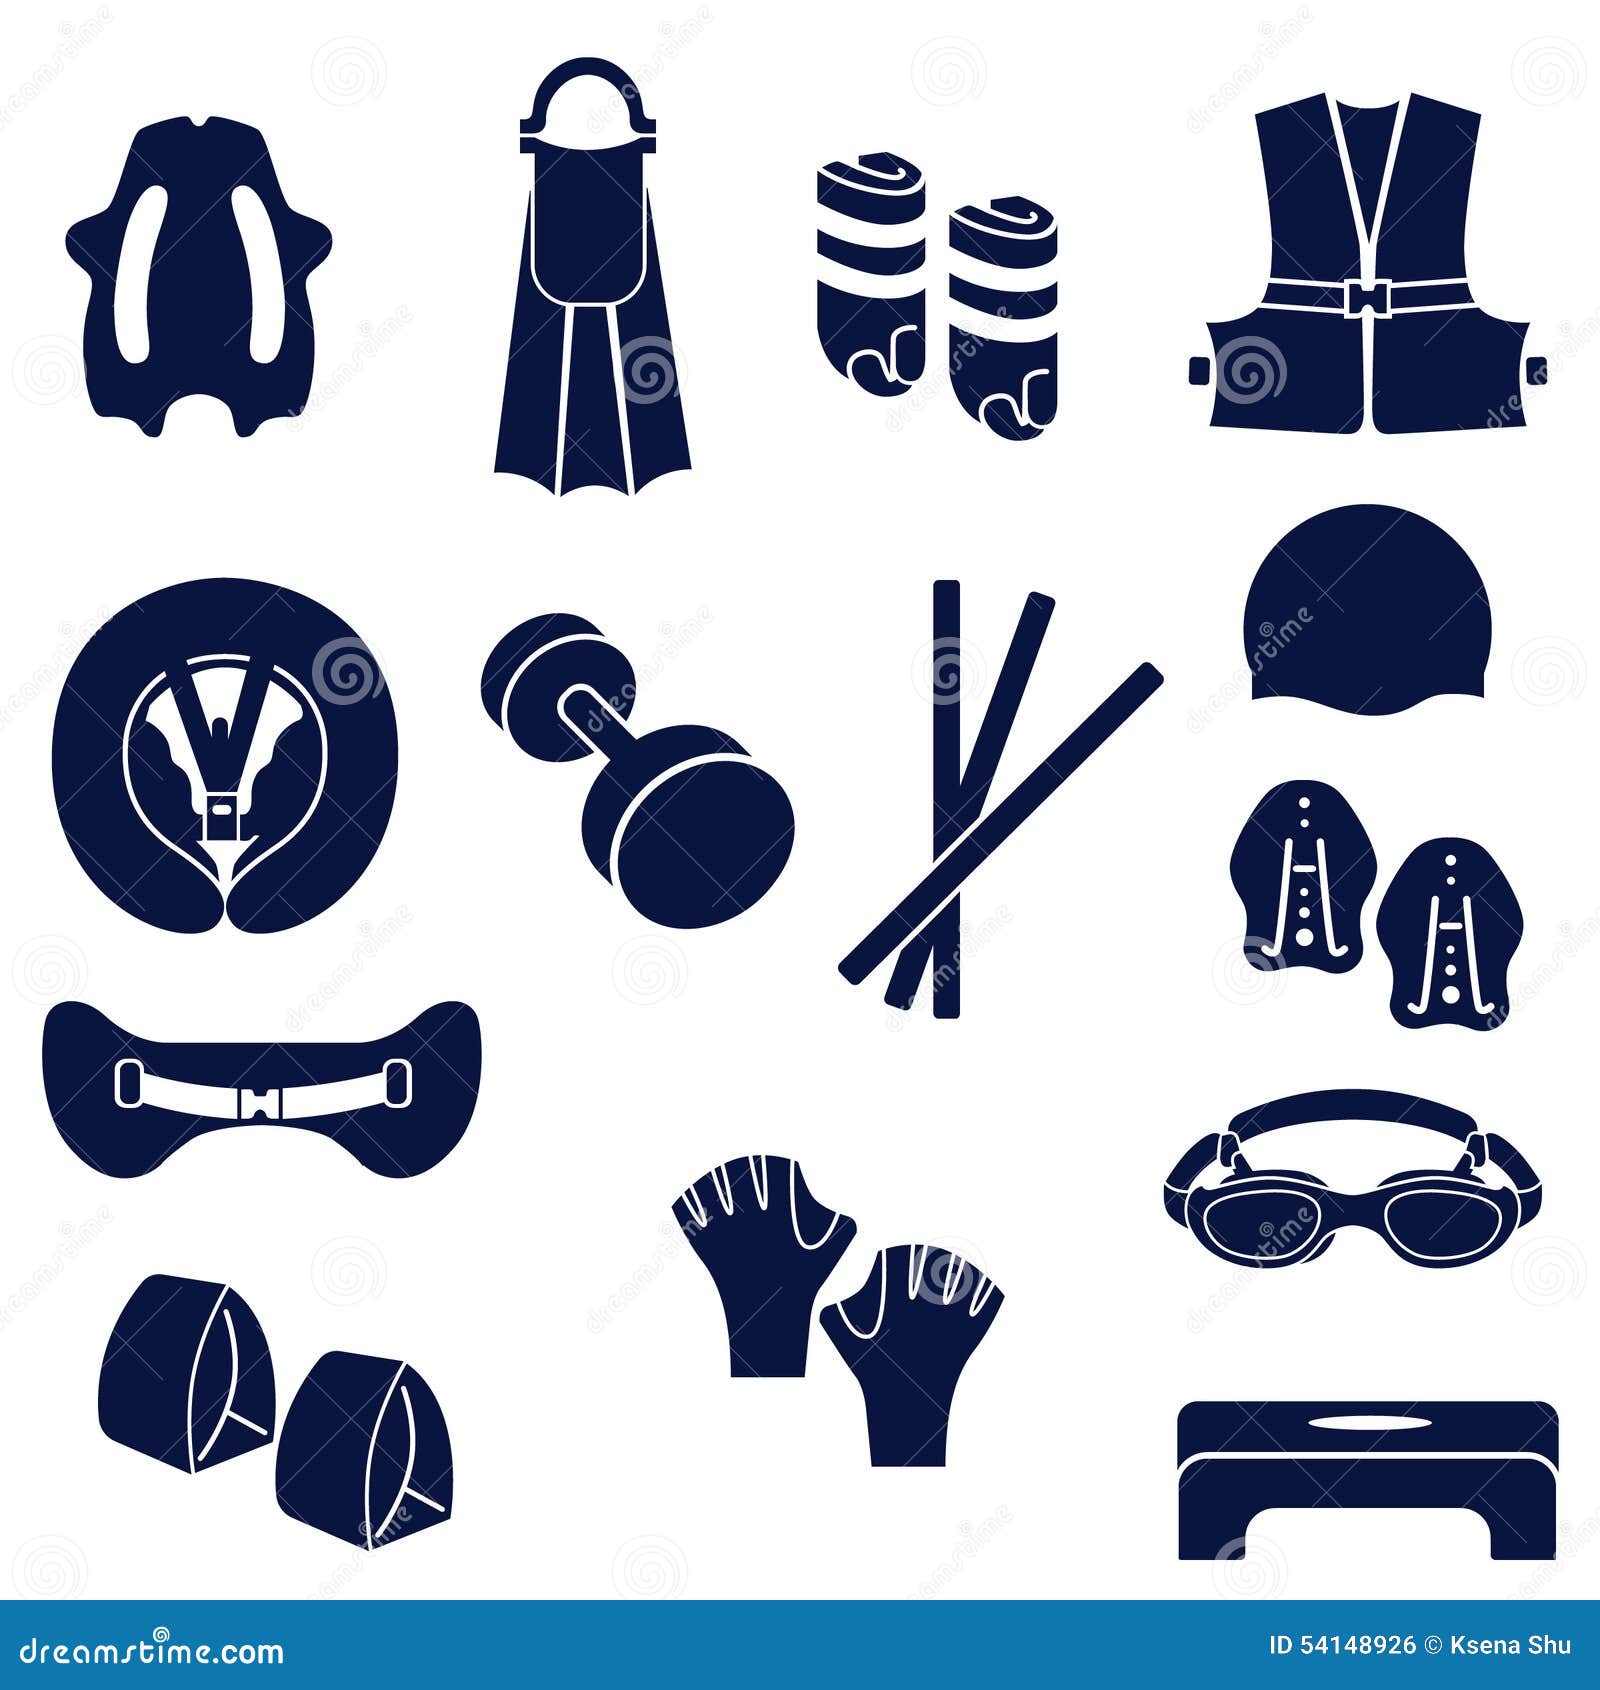 Différents Types D'accessoires Pour La Natation Illustration de